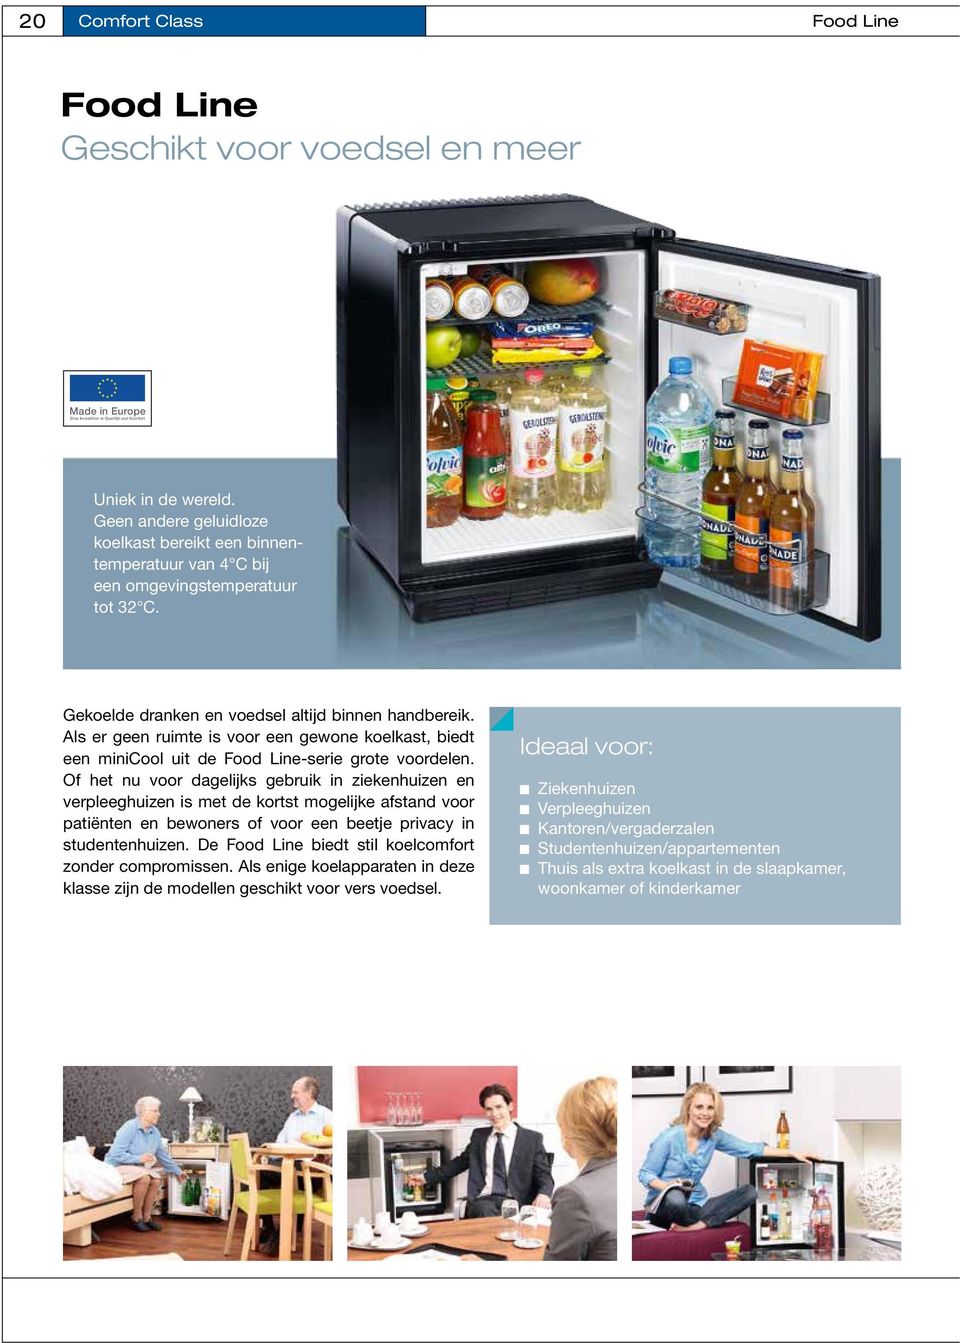 Als er geen ruimte is voor een gewone koelkast, biedt een minicool uit de Food Line-serie grote voordelen.